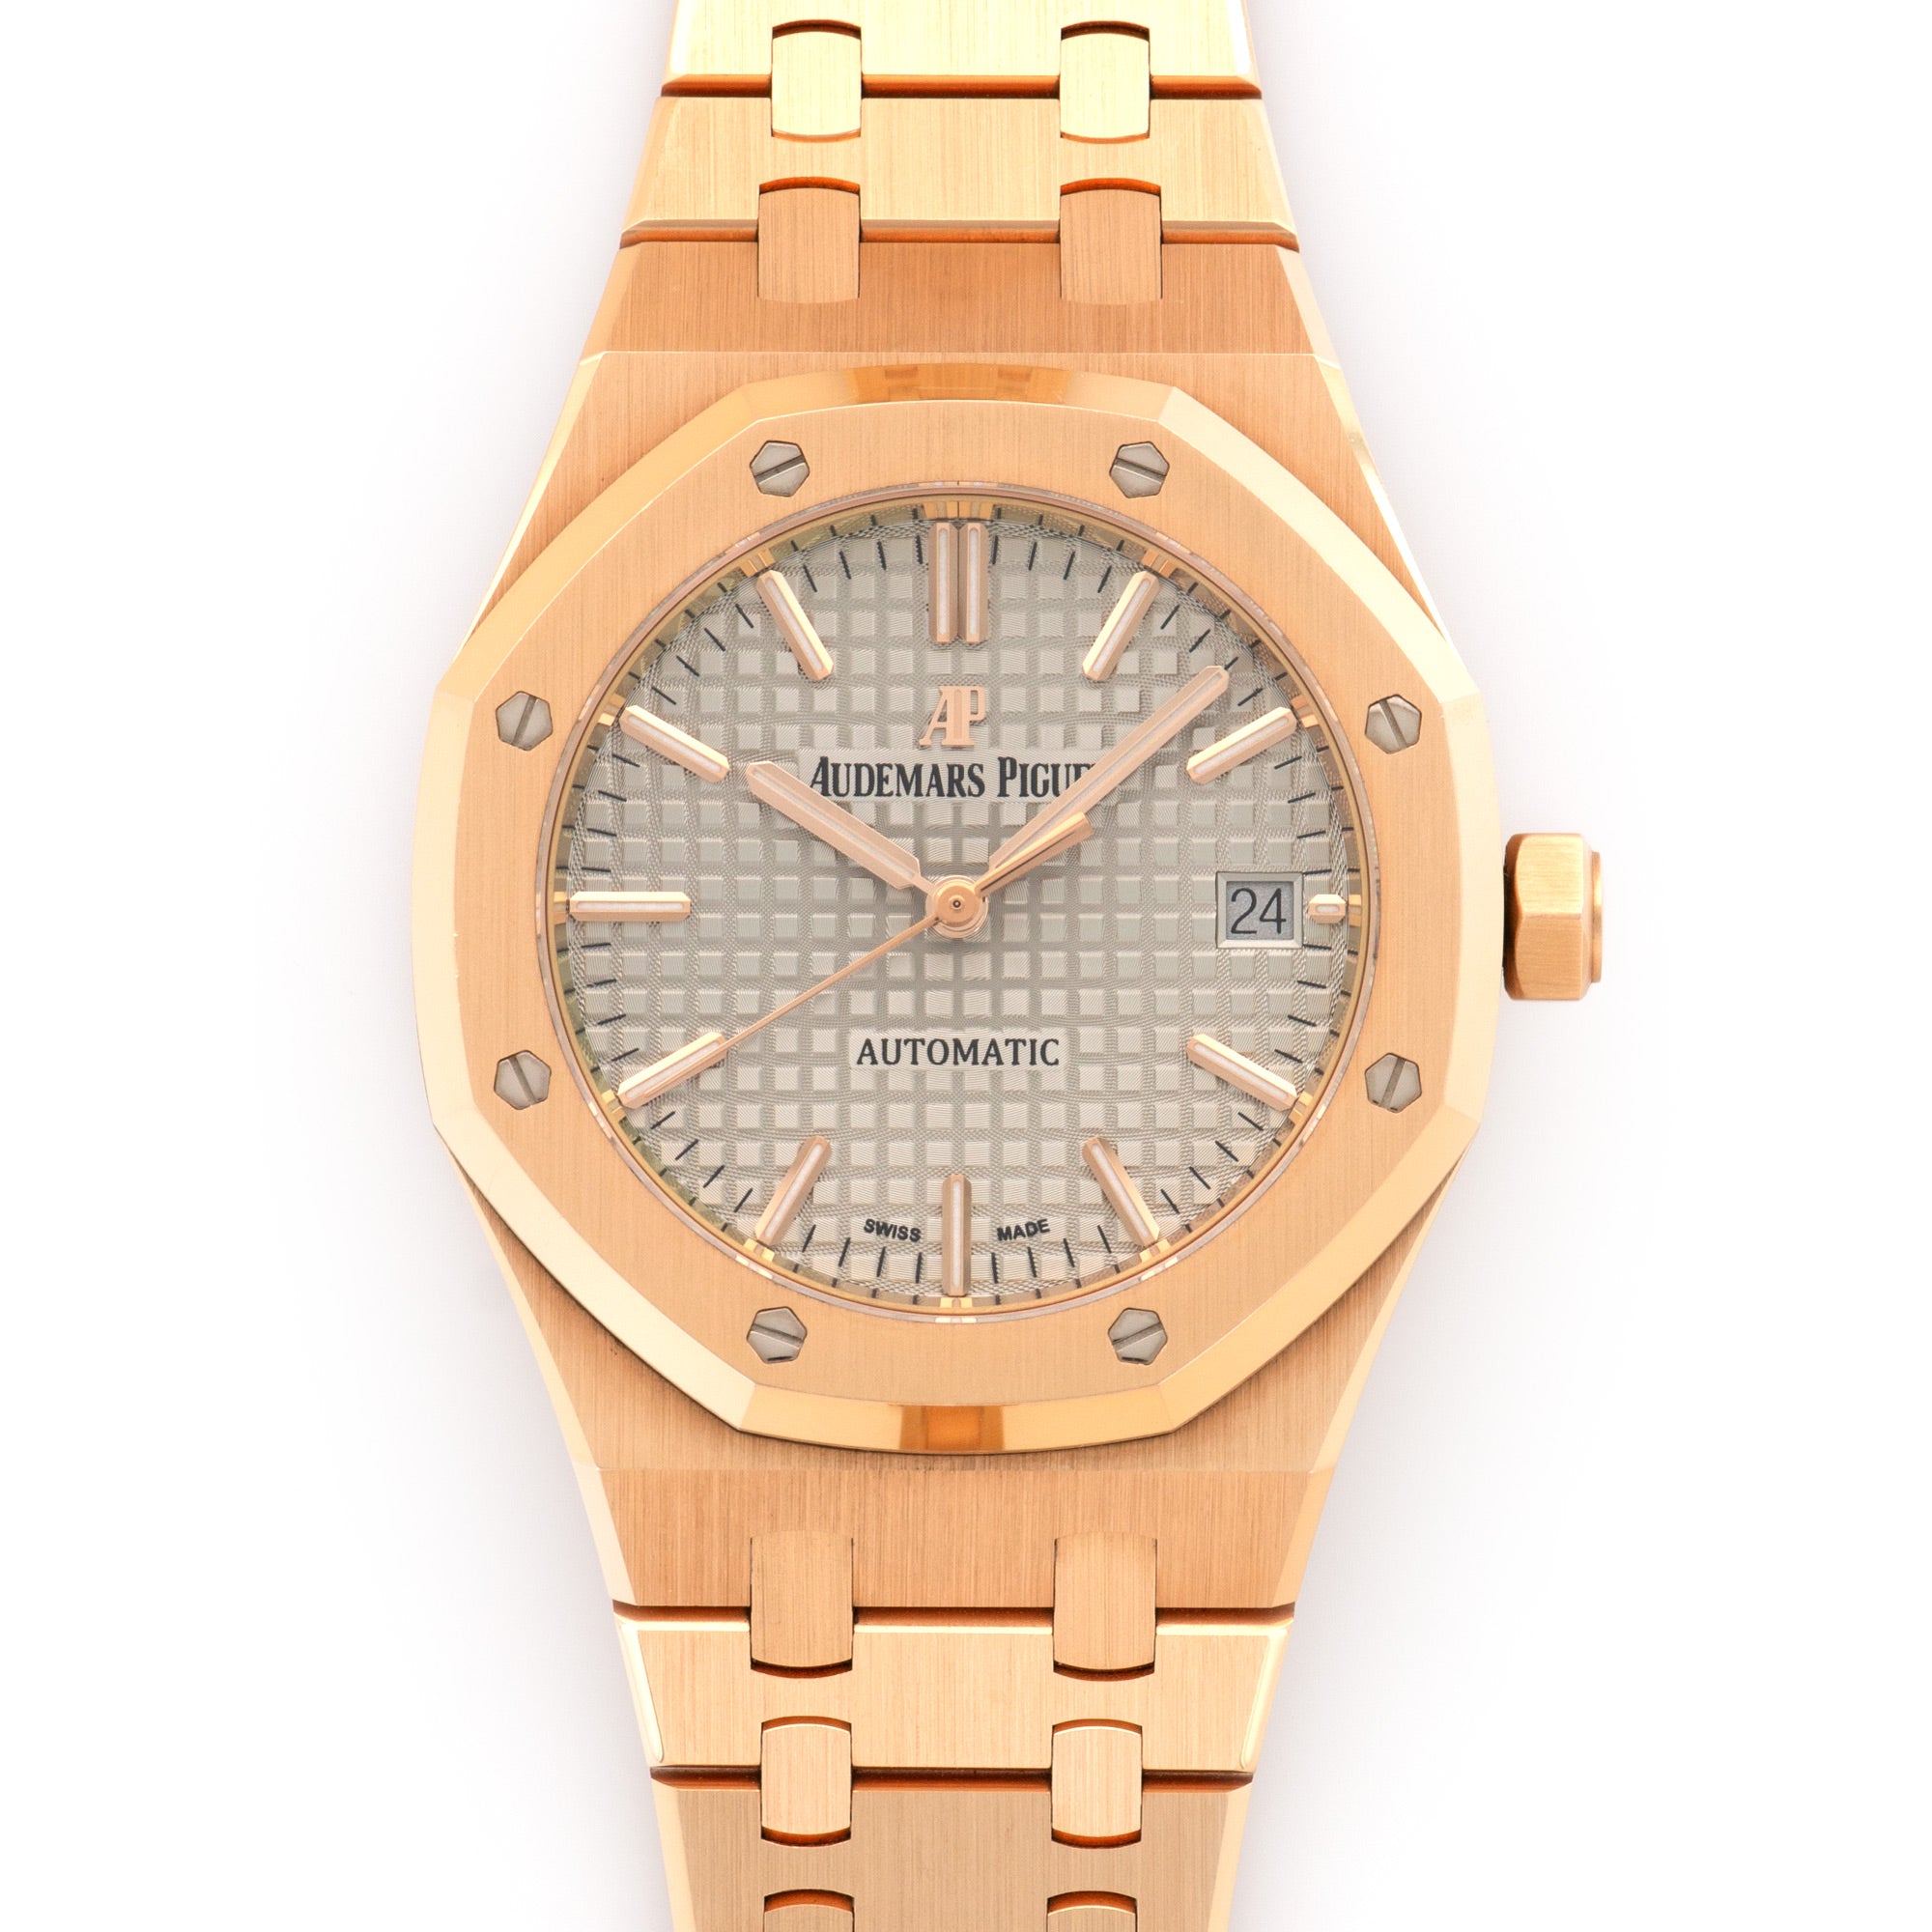 Audemars Piguet - Audemars Piguet Royal Oak Rose Gold Automatic Watch - The Keystone Watches